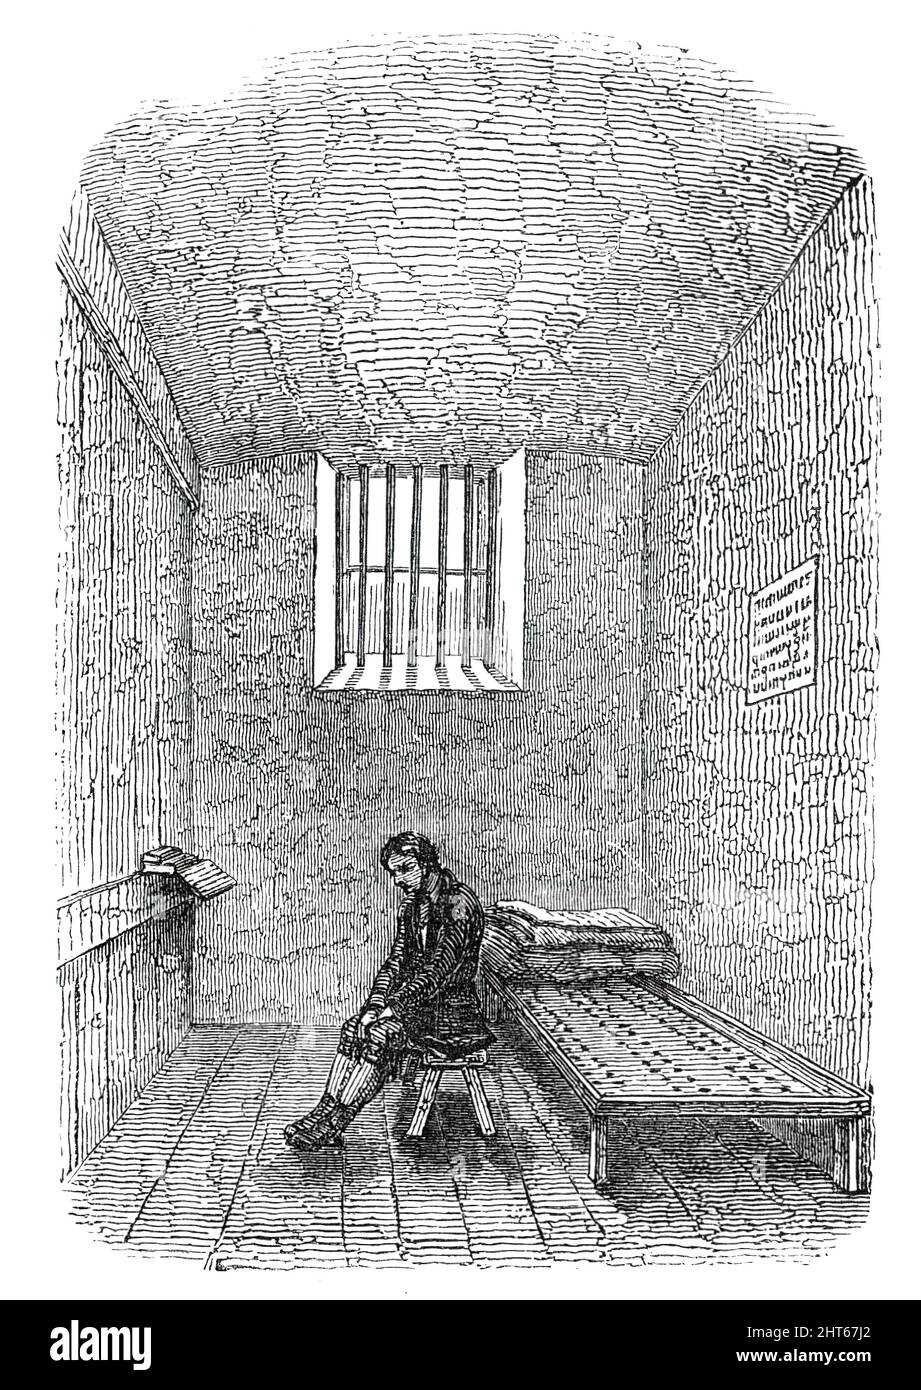 Strafzelle, Newgate Prison, [London], 1850. Auszug aus einem „...Bericht über den Zustand des Gefängnisses... Es gibt einen anderen Teil des Gefängnisses, der Aufmerksamkeit erfordert - die separaten Zellen, die... bei schlechtem Wetter so stark kalt sind, Dass der Schmerz, unter dem die Gefangenen leiden, fast das ganze Ausmaß menschlicher Ausdauer hat...während wir diese Passagen durchqueren, bemerken wir den eisernen Charakter des Gebäudes. Es ist dunkel, dicht, eng; und trotz der gewissenhaften Sauberkeit, die in jedem Teil erhalten wird, werden in seinen Lobbys keine unregelmäßigen Gerüche gefunden. Der große Fehler ist der Mangel an Platz, die Höhe Stockfoto